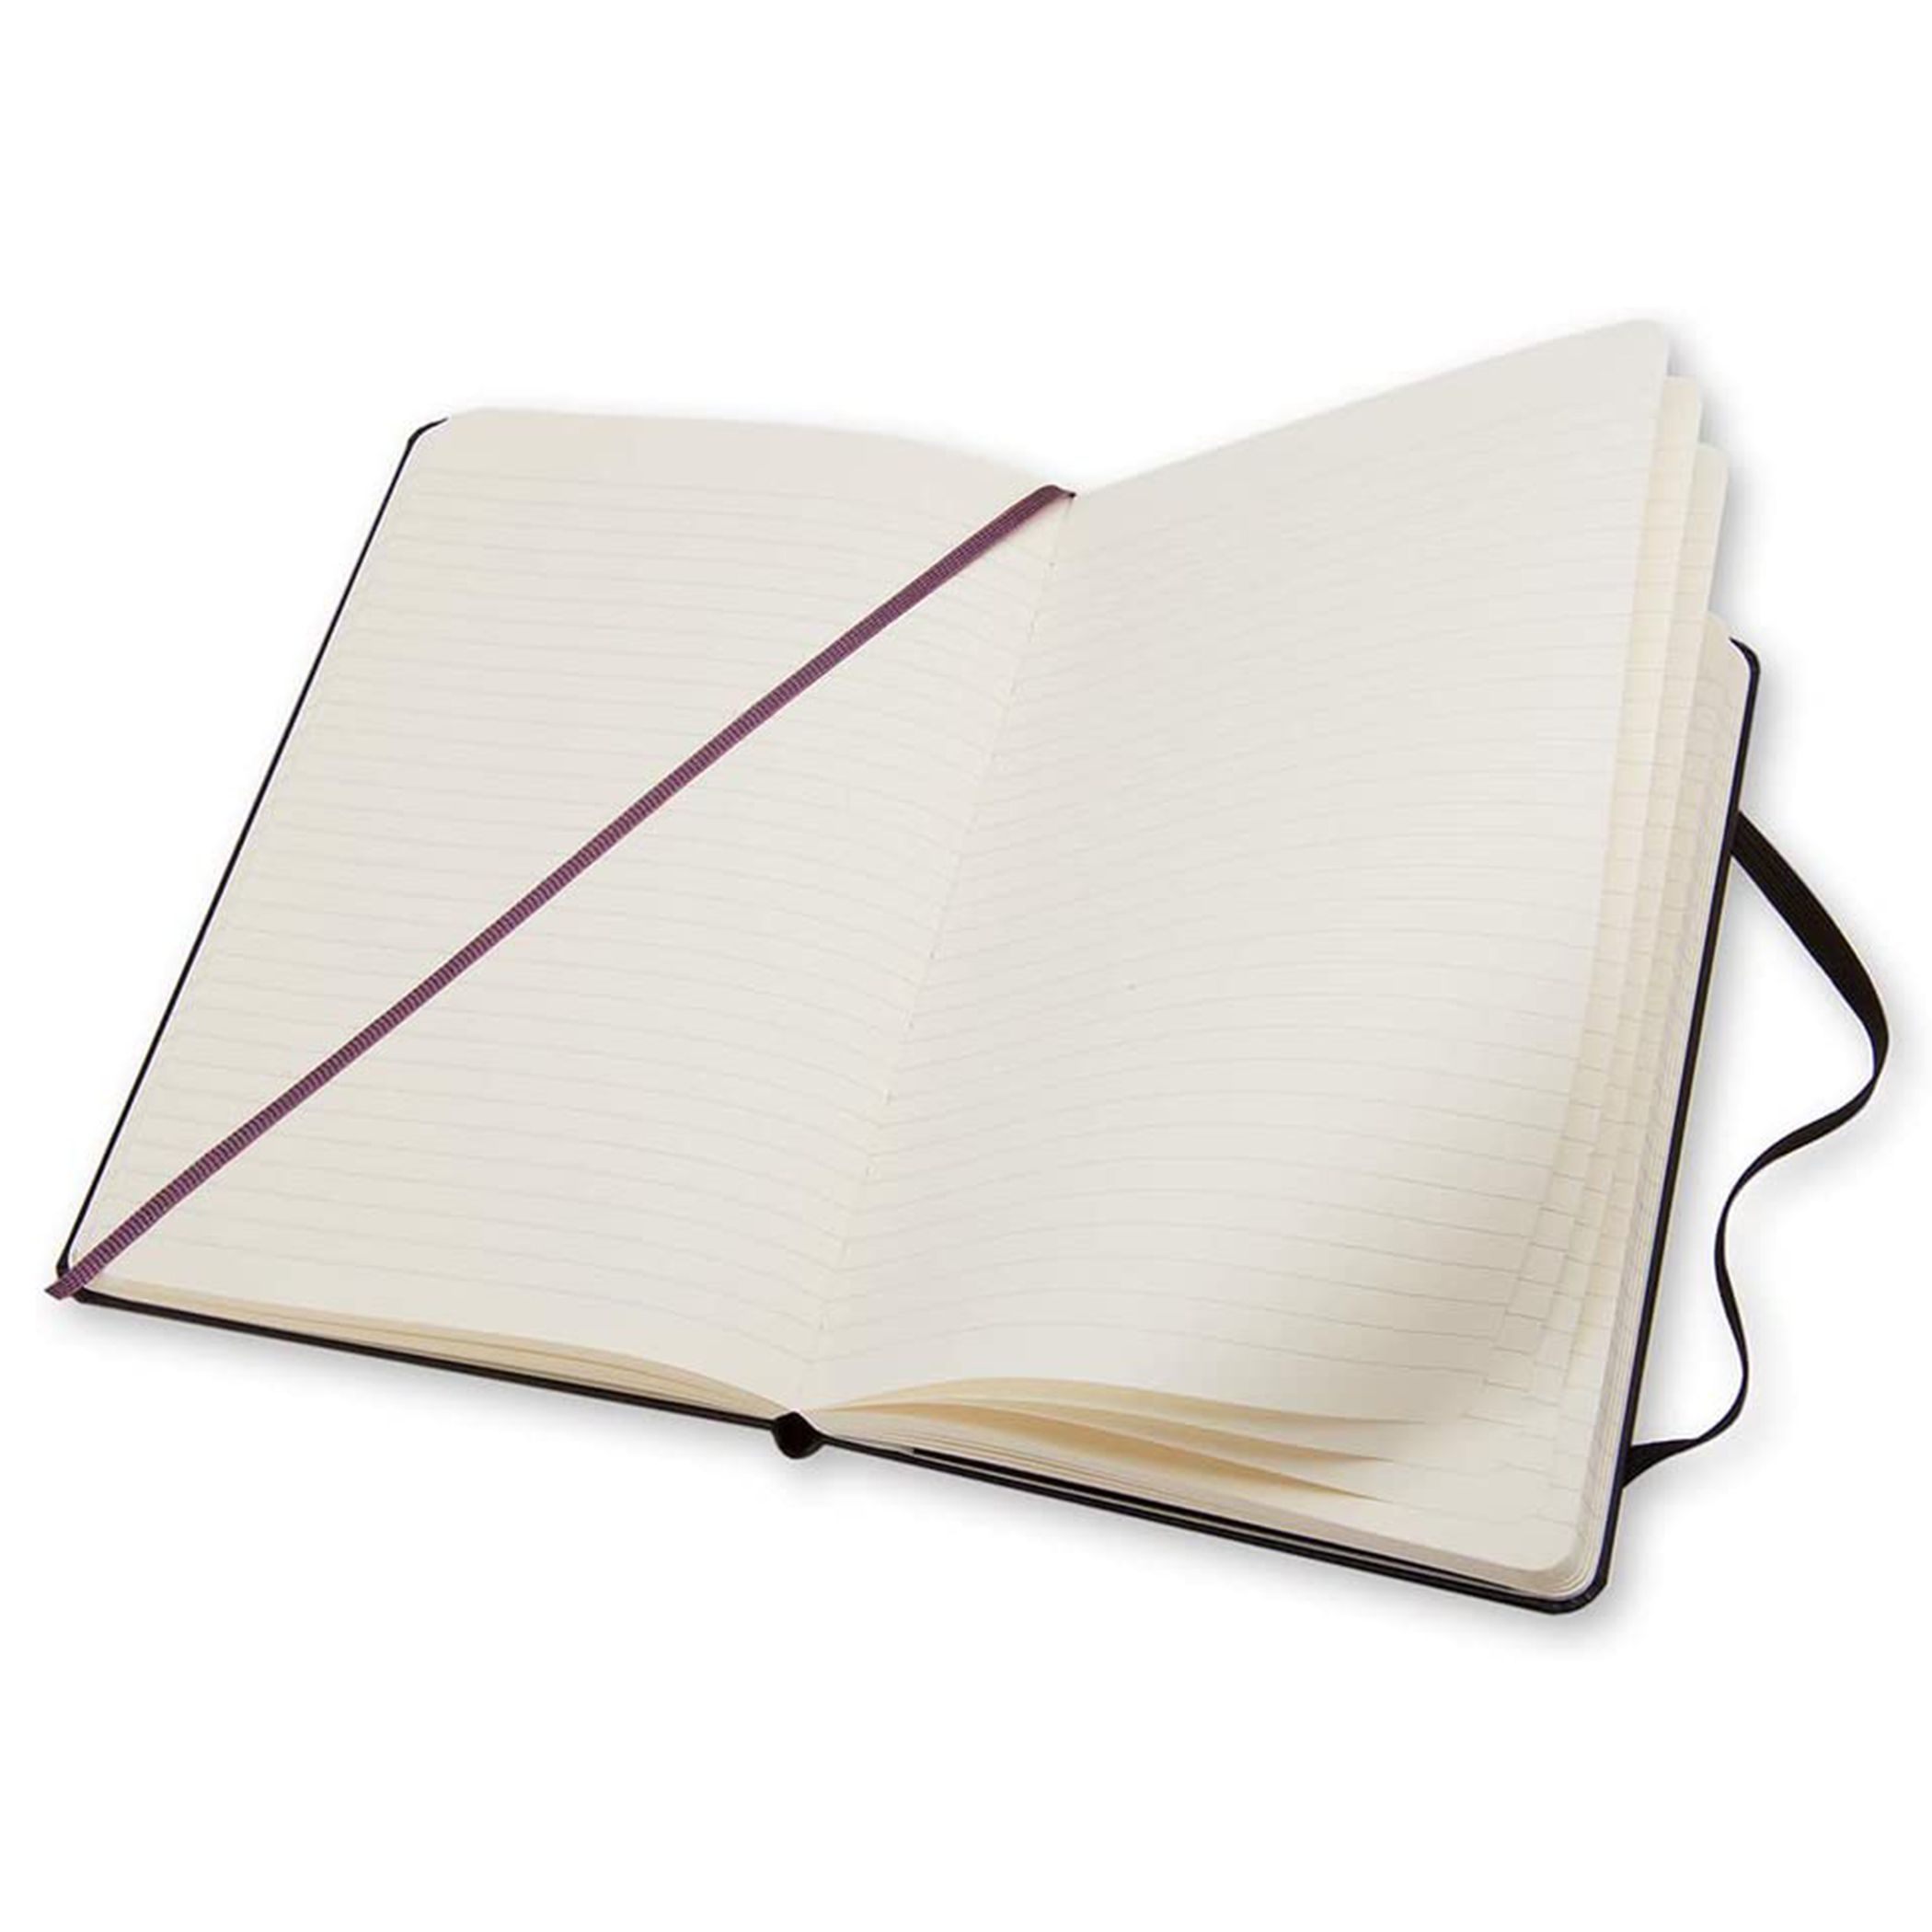 Moleskine Large Ruled Black Notebook - 3226 Online